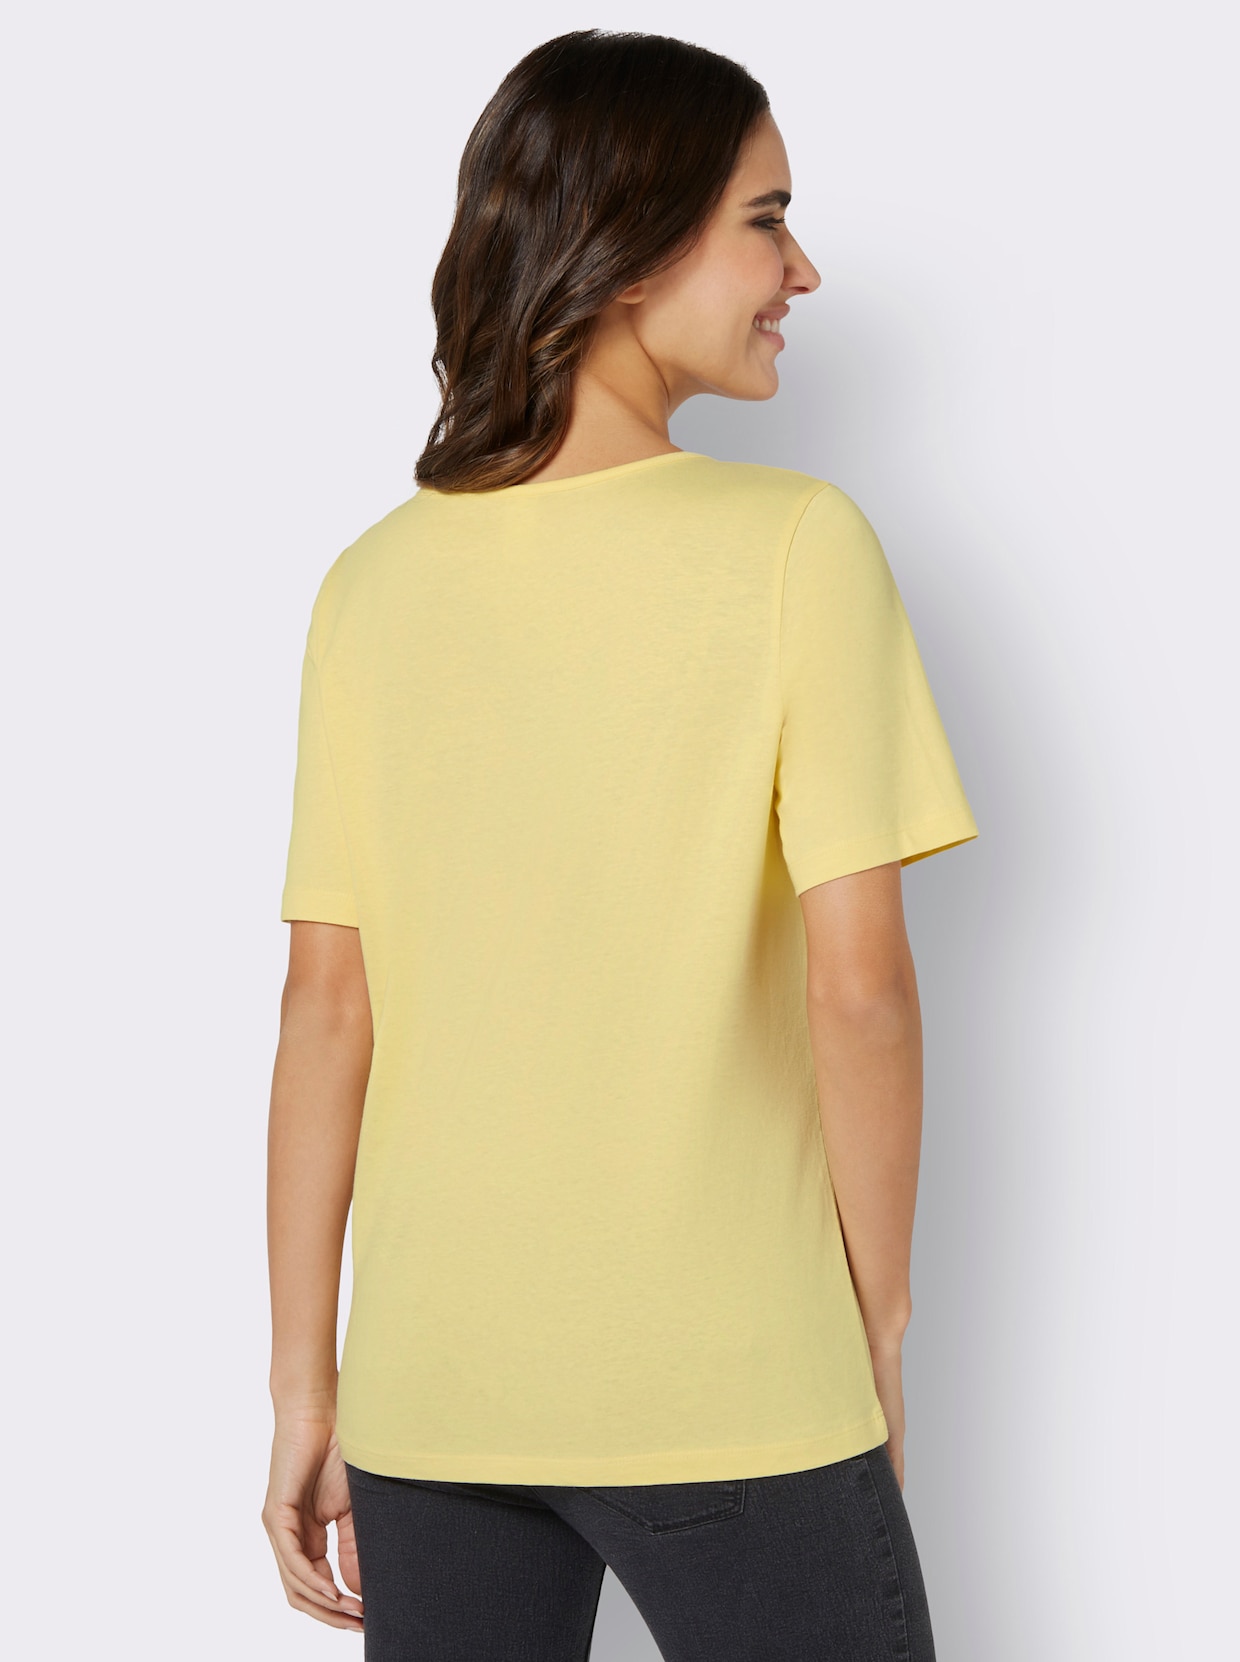 Tričko s krátkým rukávem - citronová-ecru